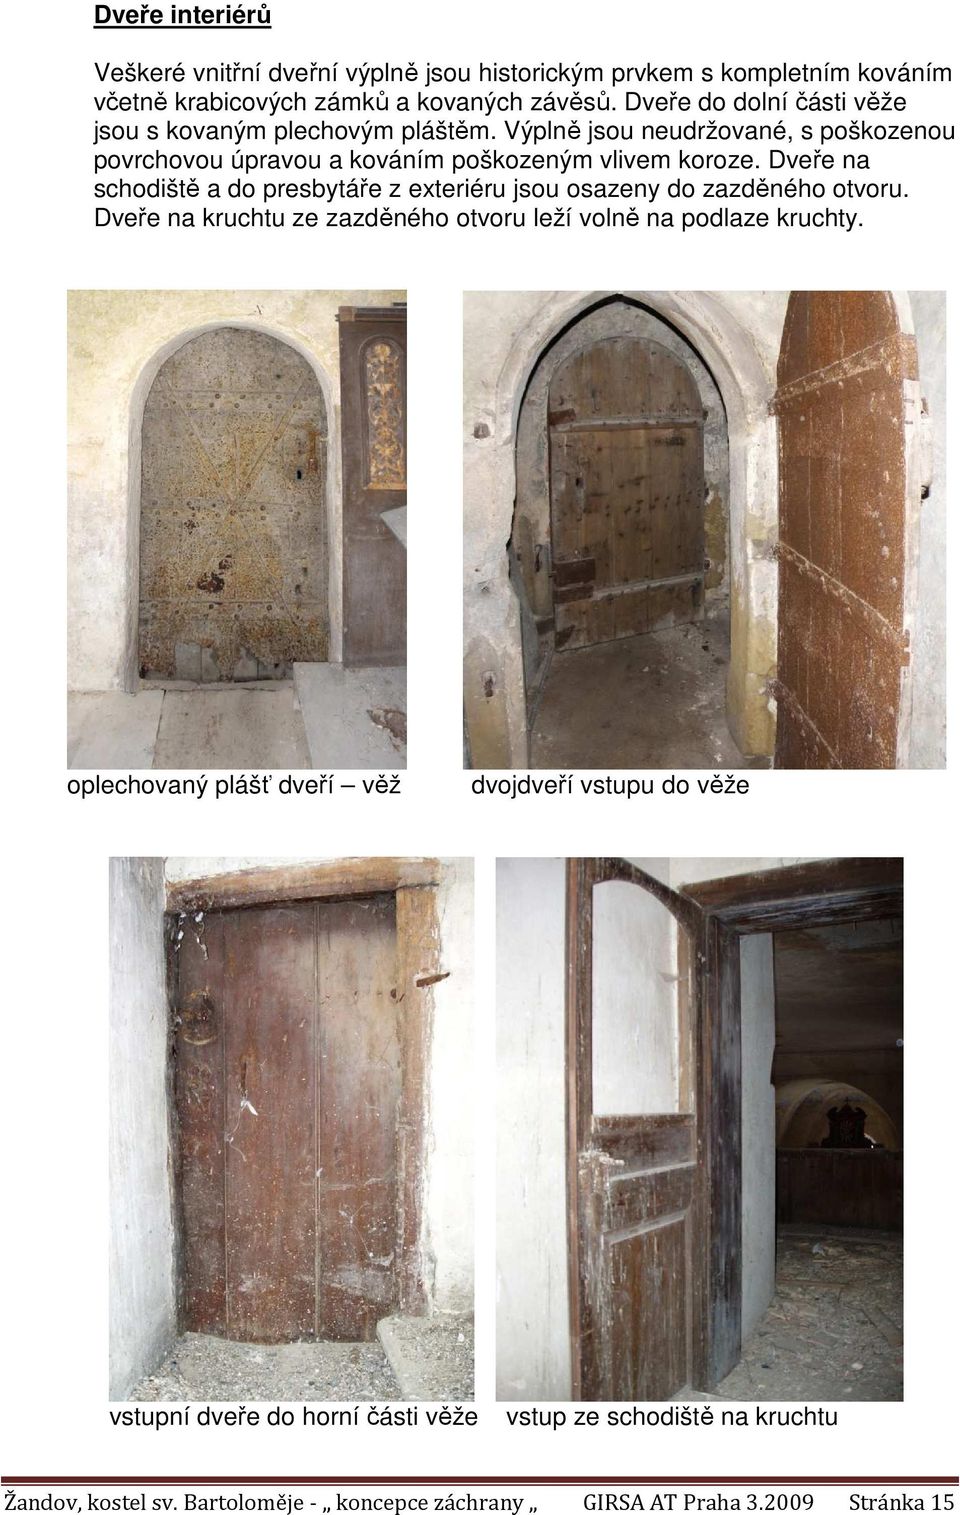 Dveře na schodiště a do presbytáře z exteriéru jsou osazeny do zazděného otvoru. Dveře na kruchtu ze zazděného otvoru leží volně na podlaze kruchty.